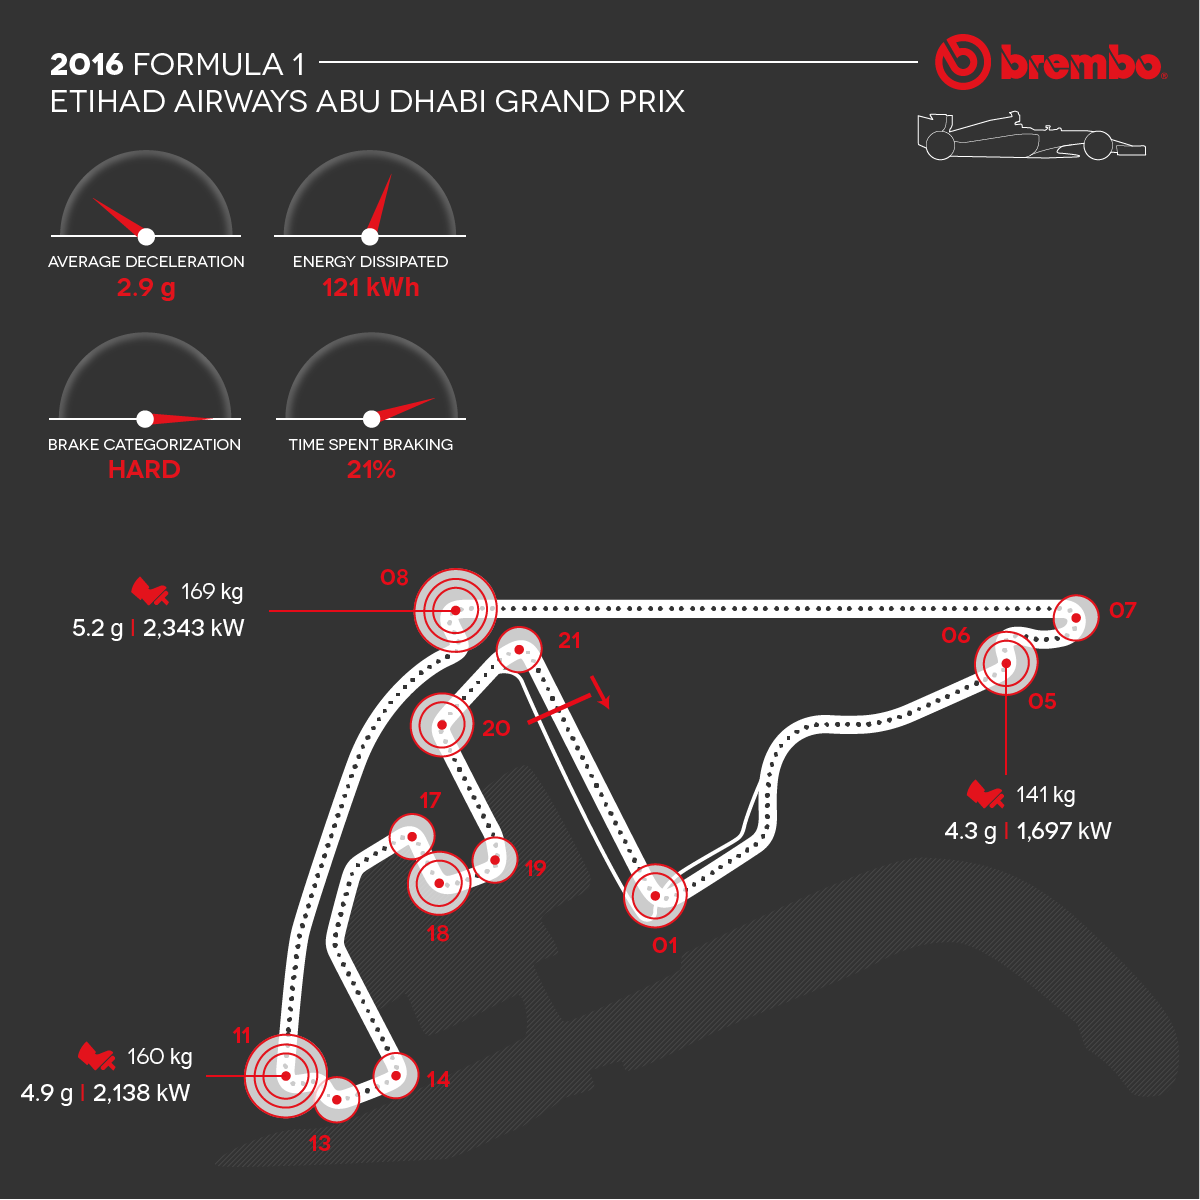 Representación detallada del circuito de Abu Dhabi 2016 con curvas detalles Brembo